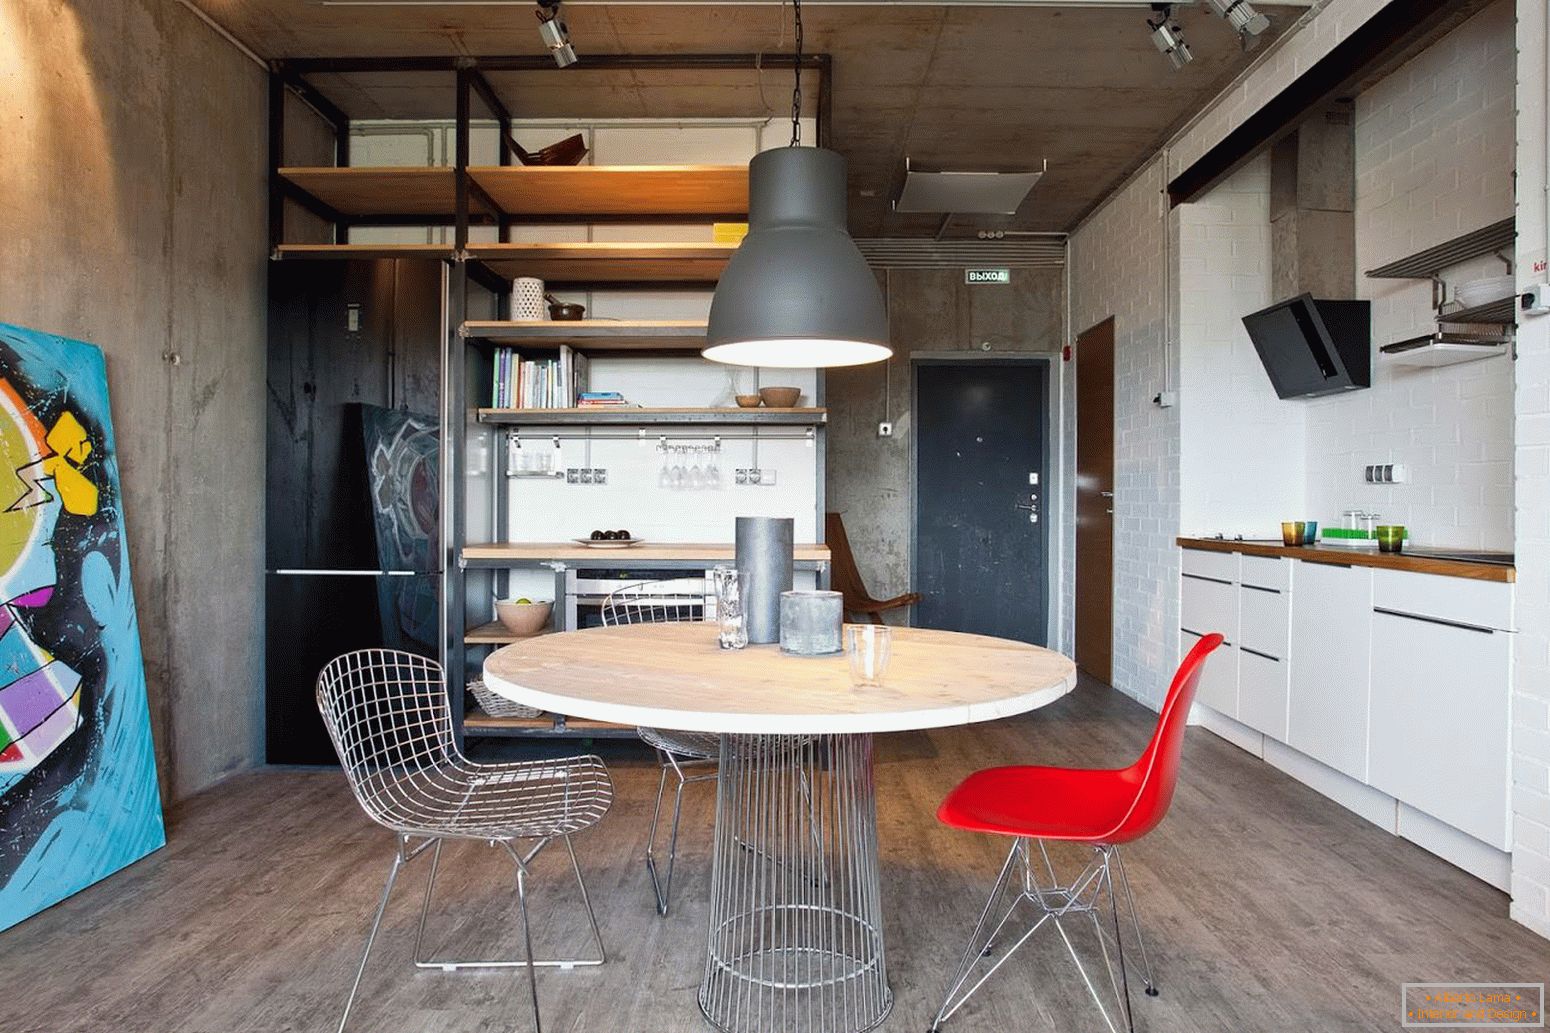 Dining room of designer studio apartments in Russia